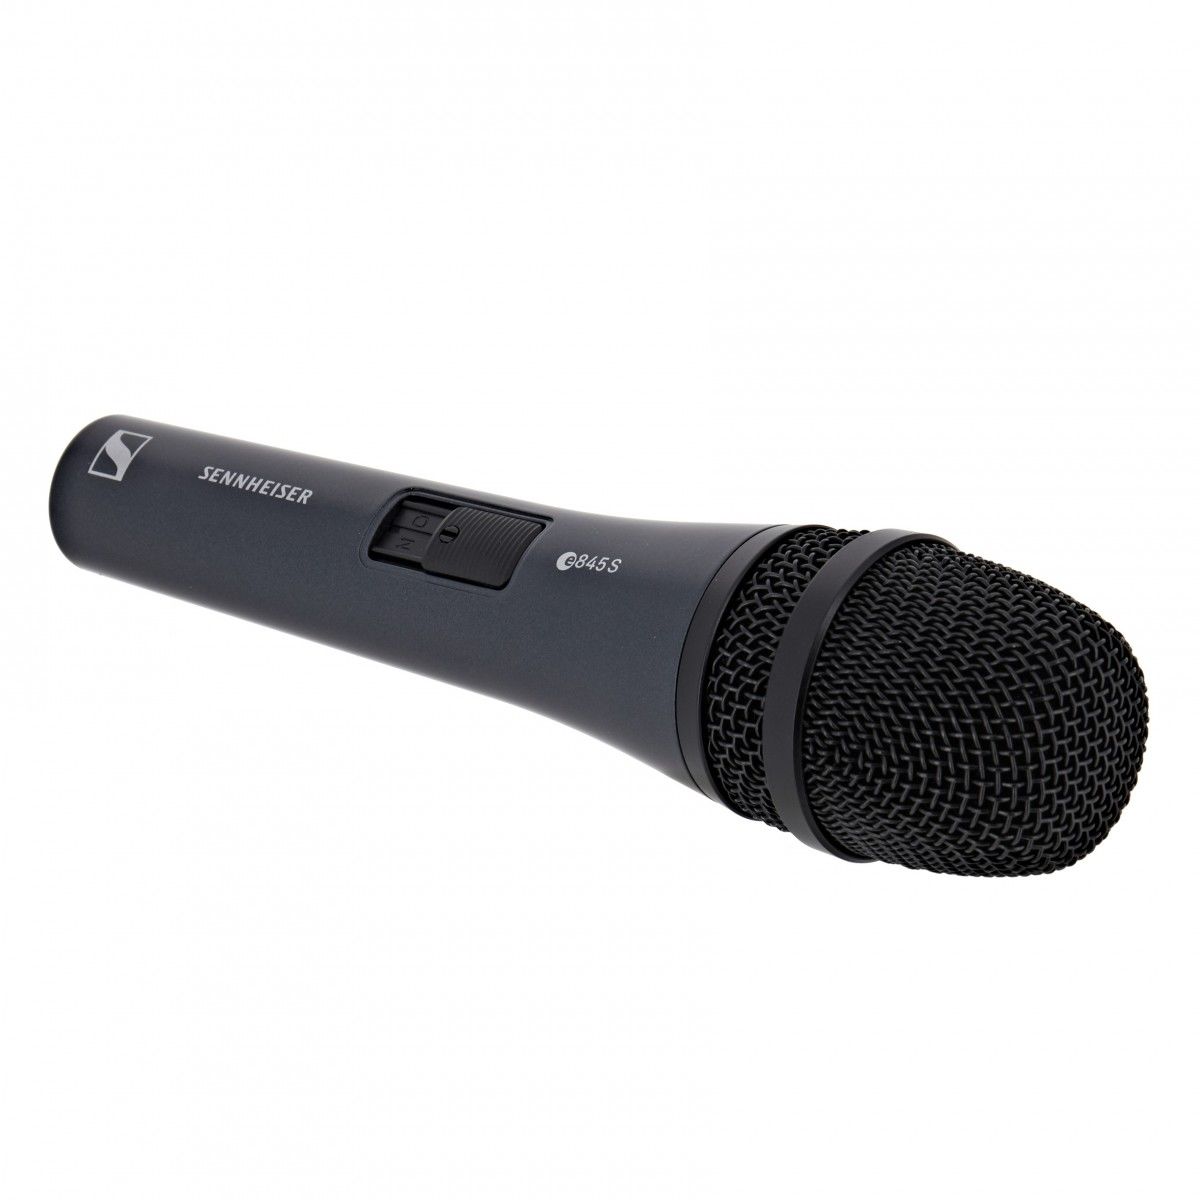 Вокальный микрофон SENNHEISER E 845-S